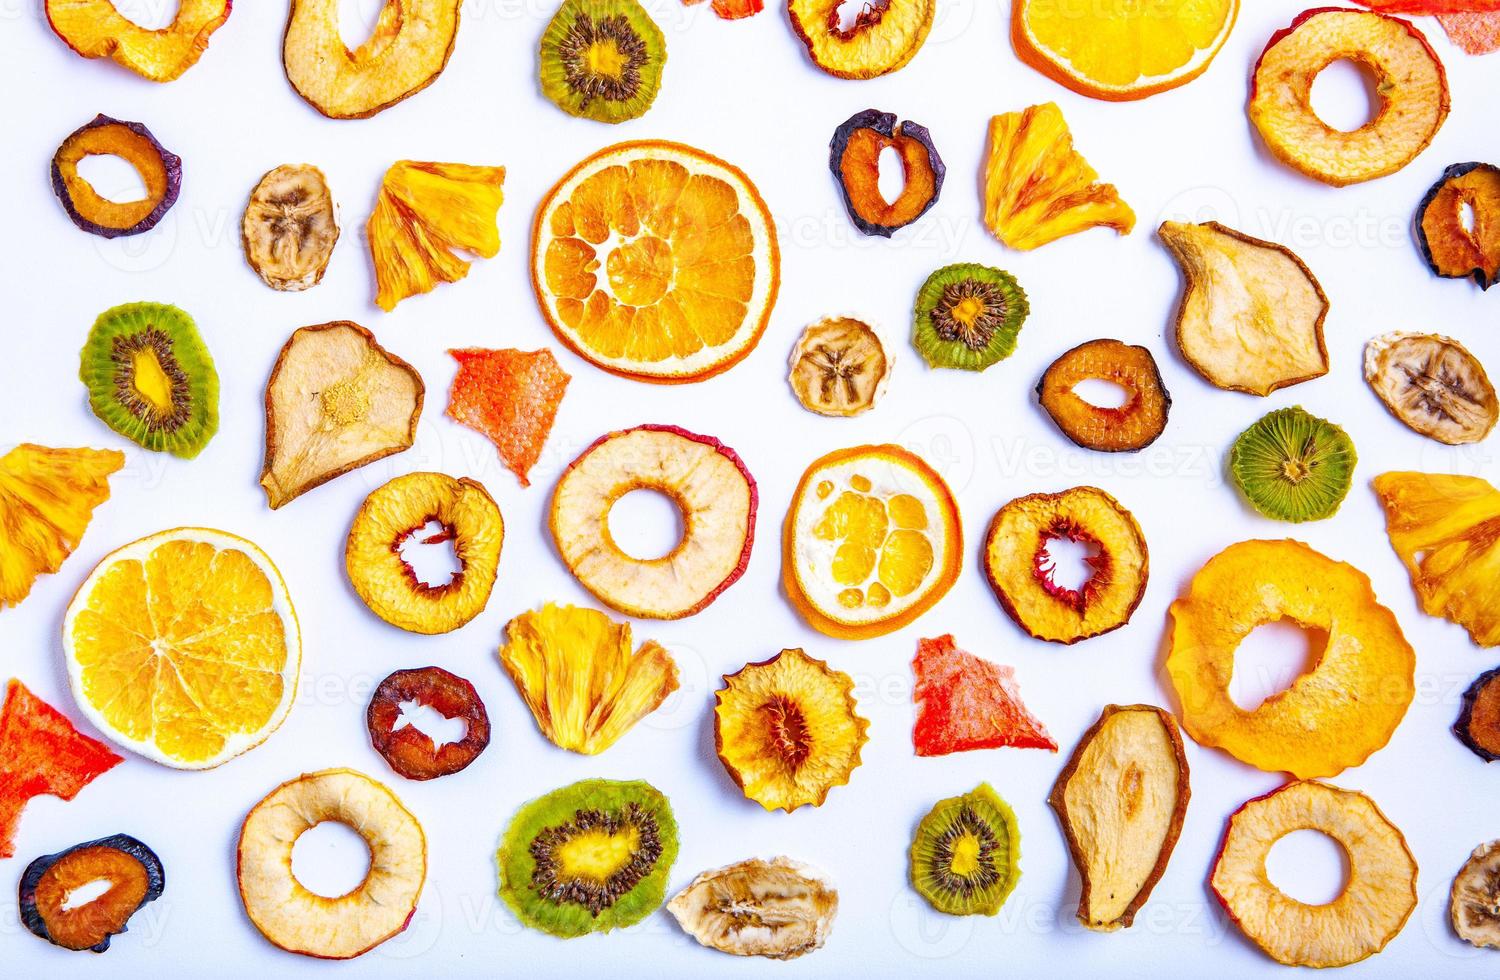 organico sano assortito mix di frutta secca da vicino. snack a base di frutta secca. mele secche, mango, feijoa, albicocche secche, prugne secche vista dall'alto foto